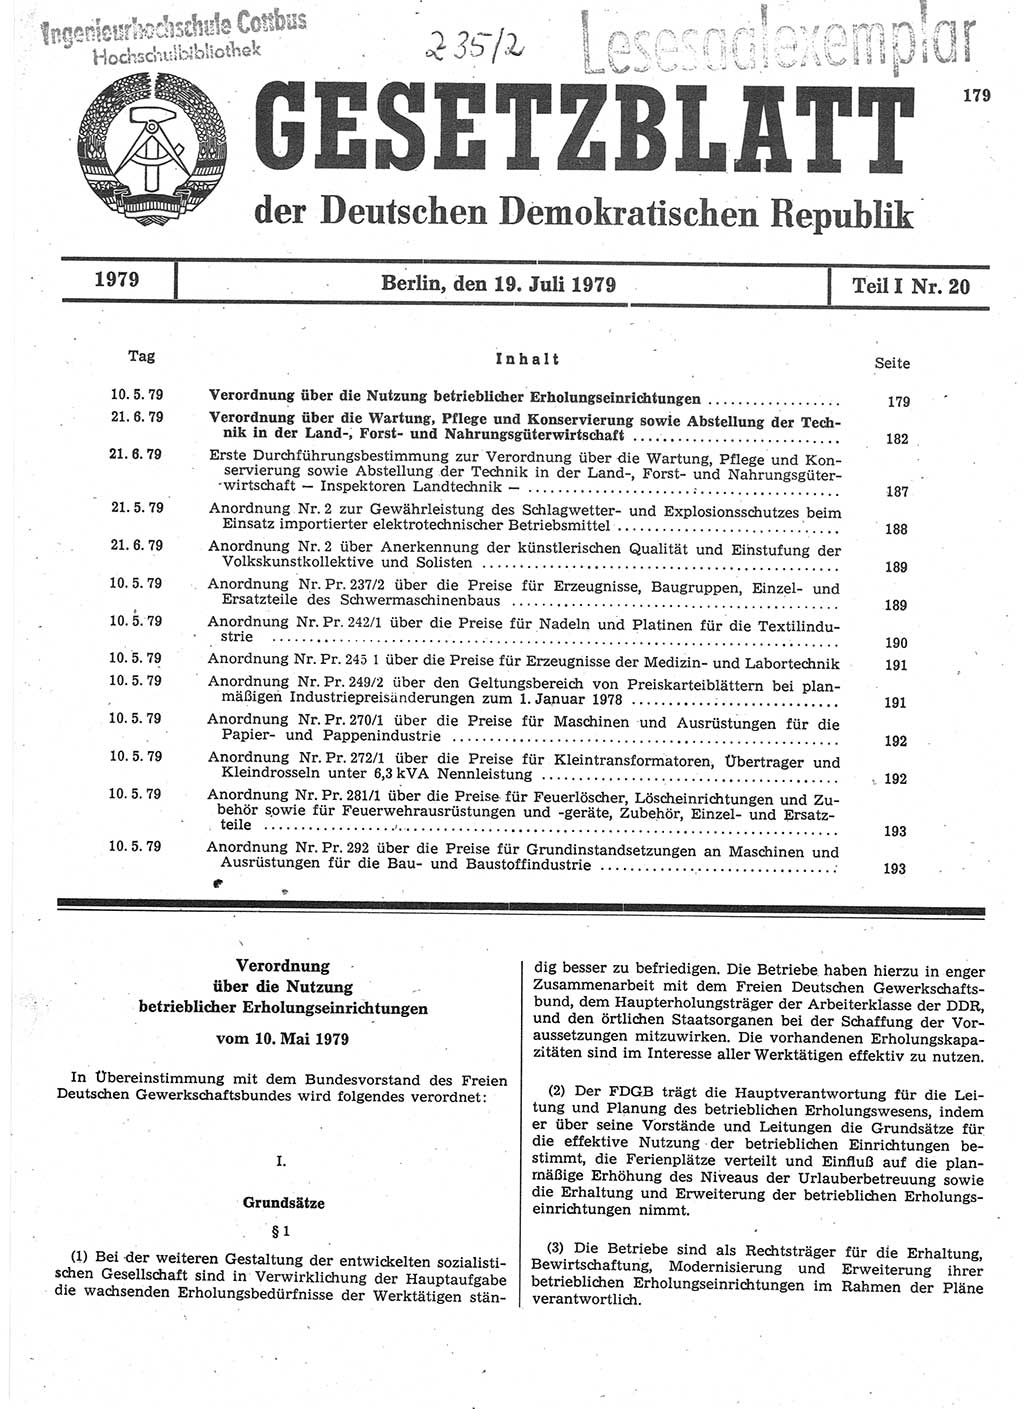 Gesetzblatt (GBl.) der Deutschen Demokratischen Republik (DDR) Teil Ⅰ 1979, Seite 179 (GBl. DDR Ⅰ 1979, S. 179)